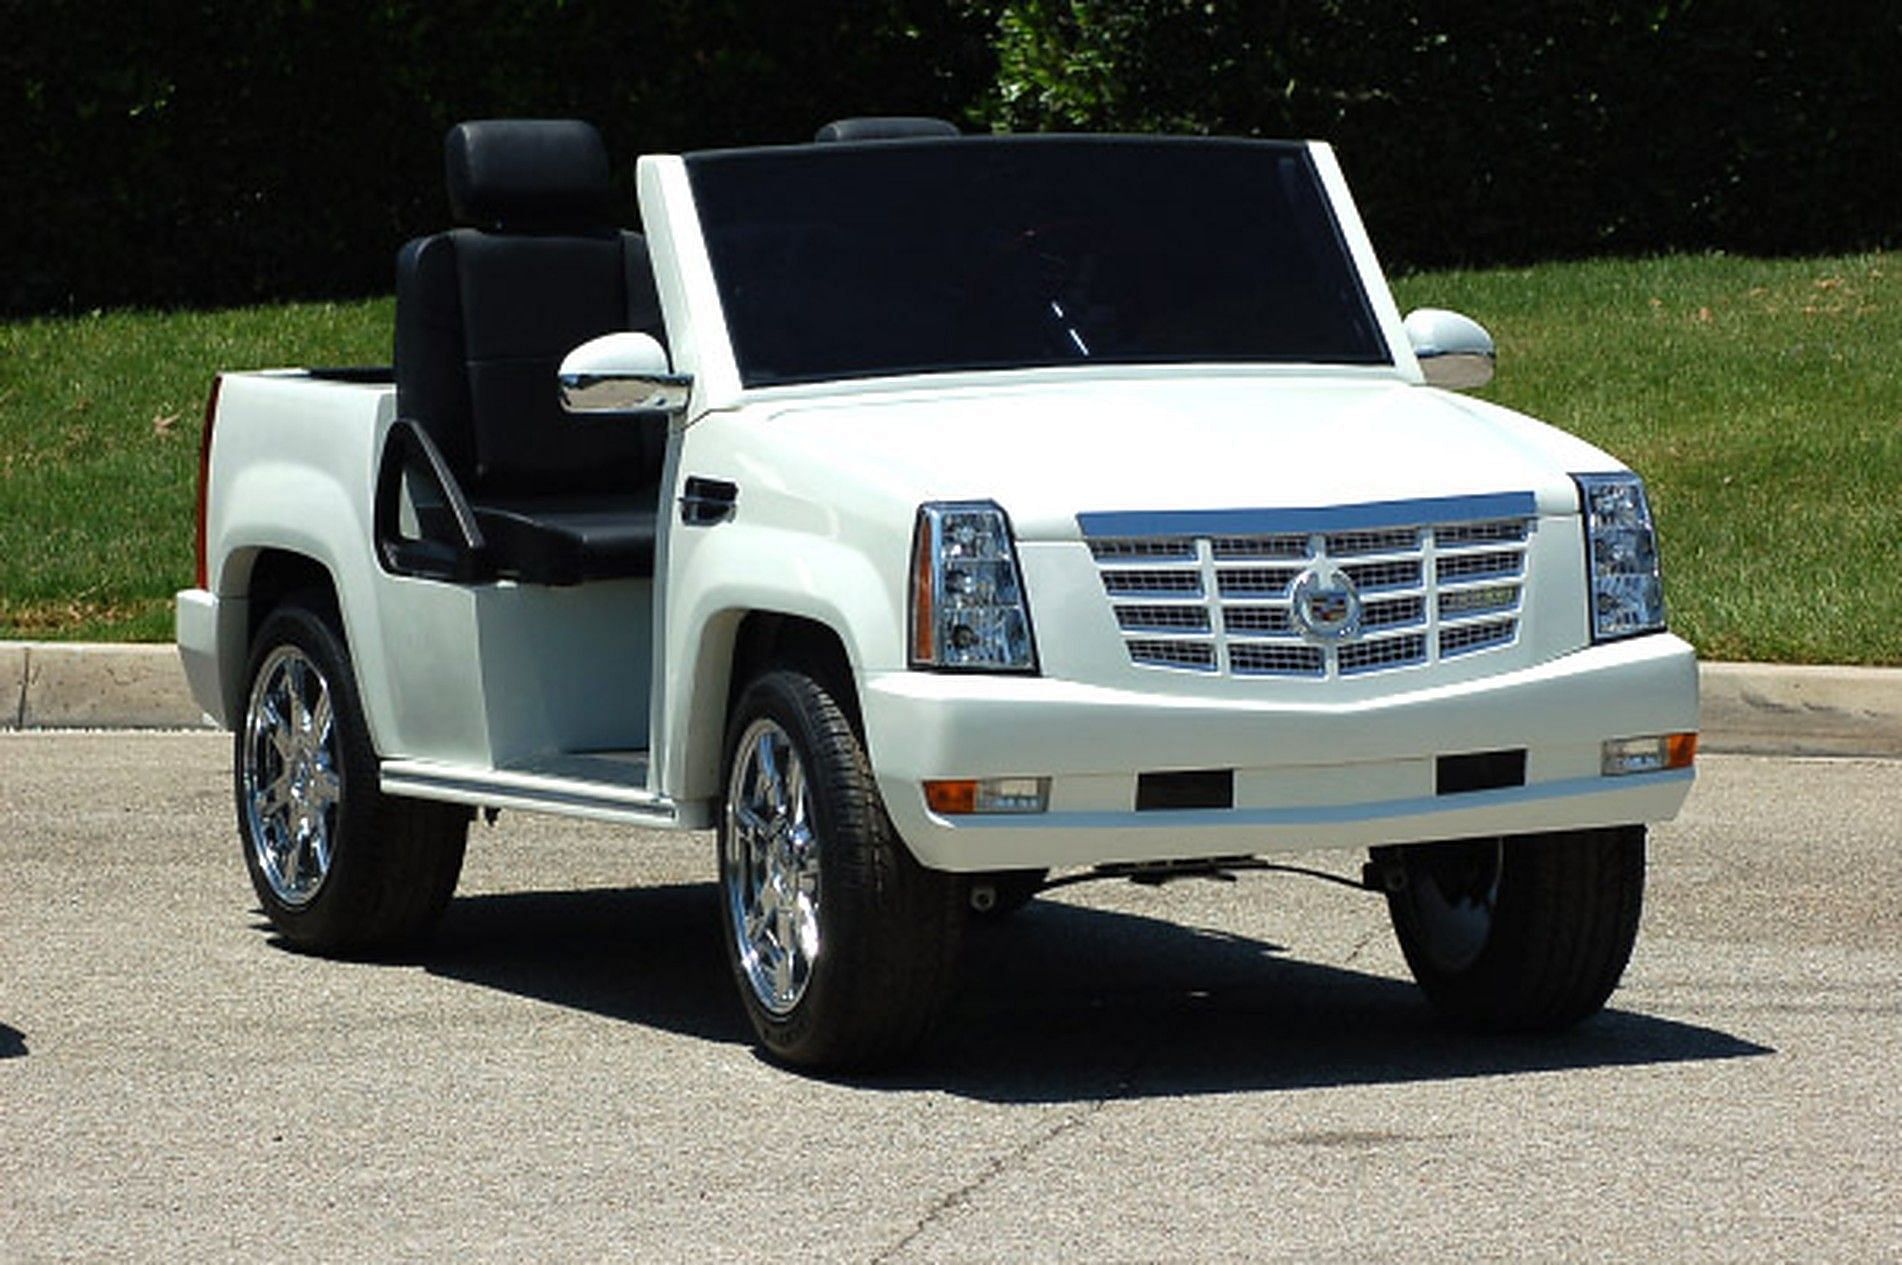 Cadillac Escalade golf Cart (Image via coolcartsoftexas.com)